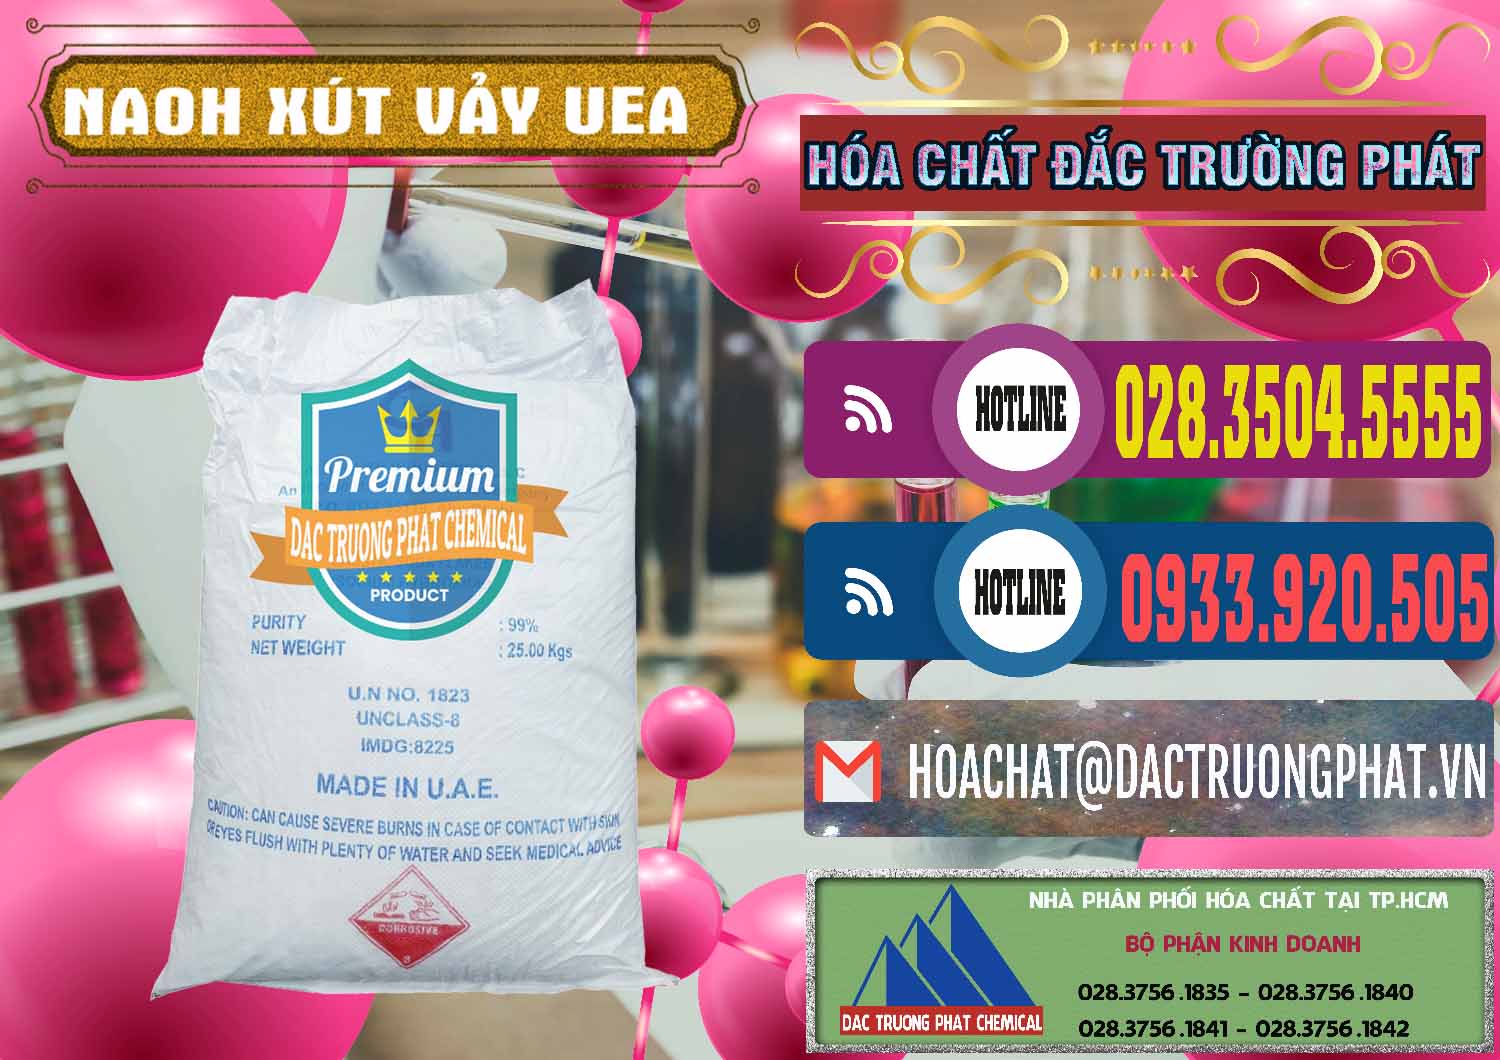 Nơi cung ứng _ bán Xút Vảy - NaOH Vảy UAE Iran - 0432 - Công ty chuyên cung cấp & nhập khẩu hóa chất tại TP.HCM - muabanhoachat.com.vn